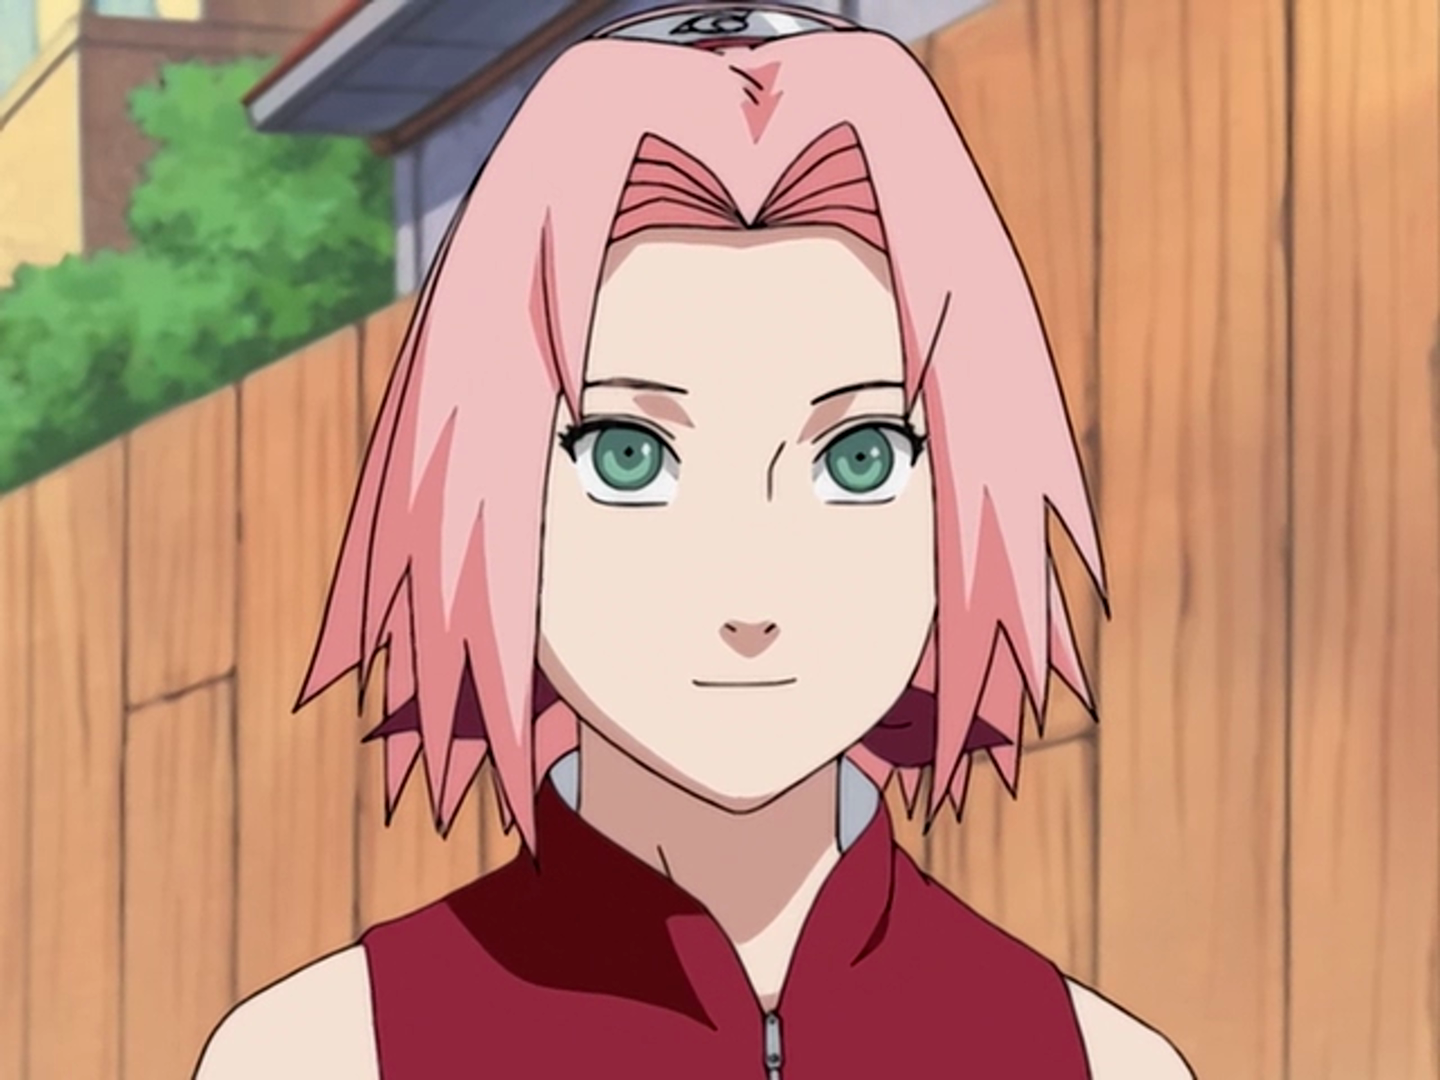 1. Sakura Haruno from Naruto - wide 4